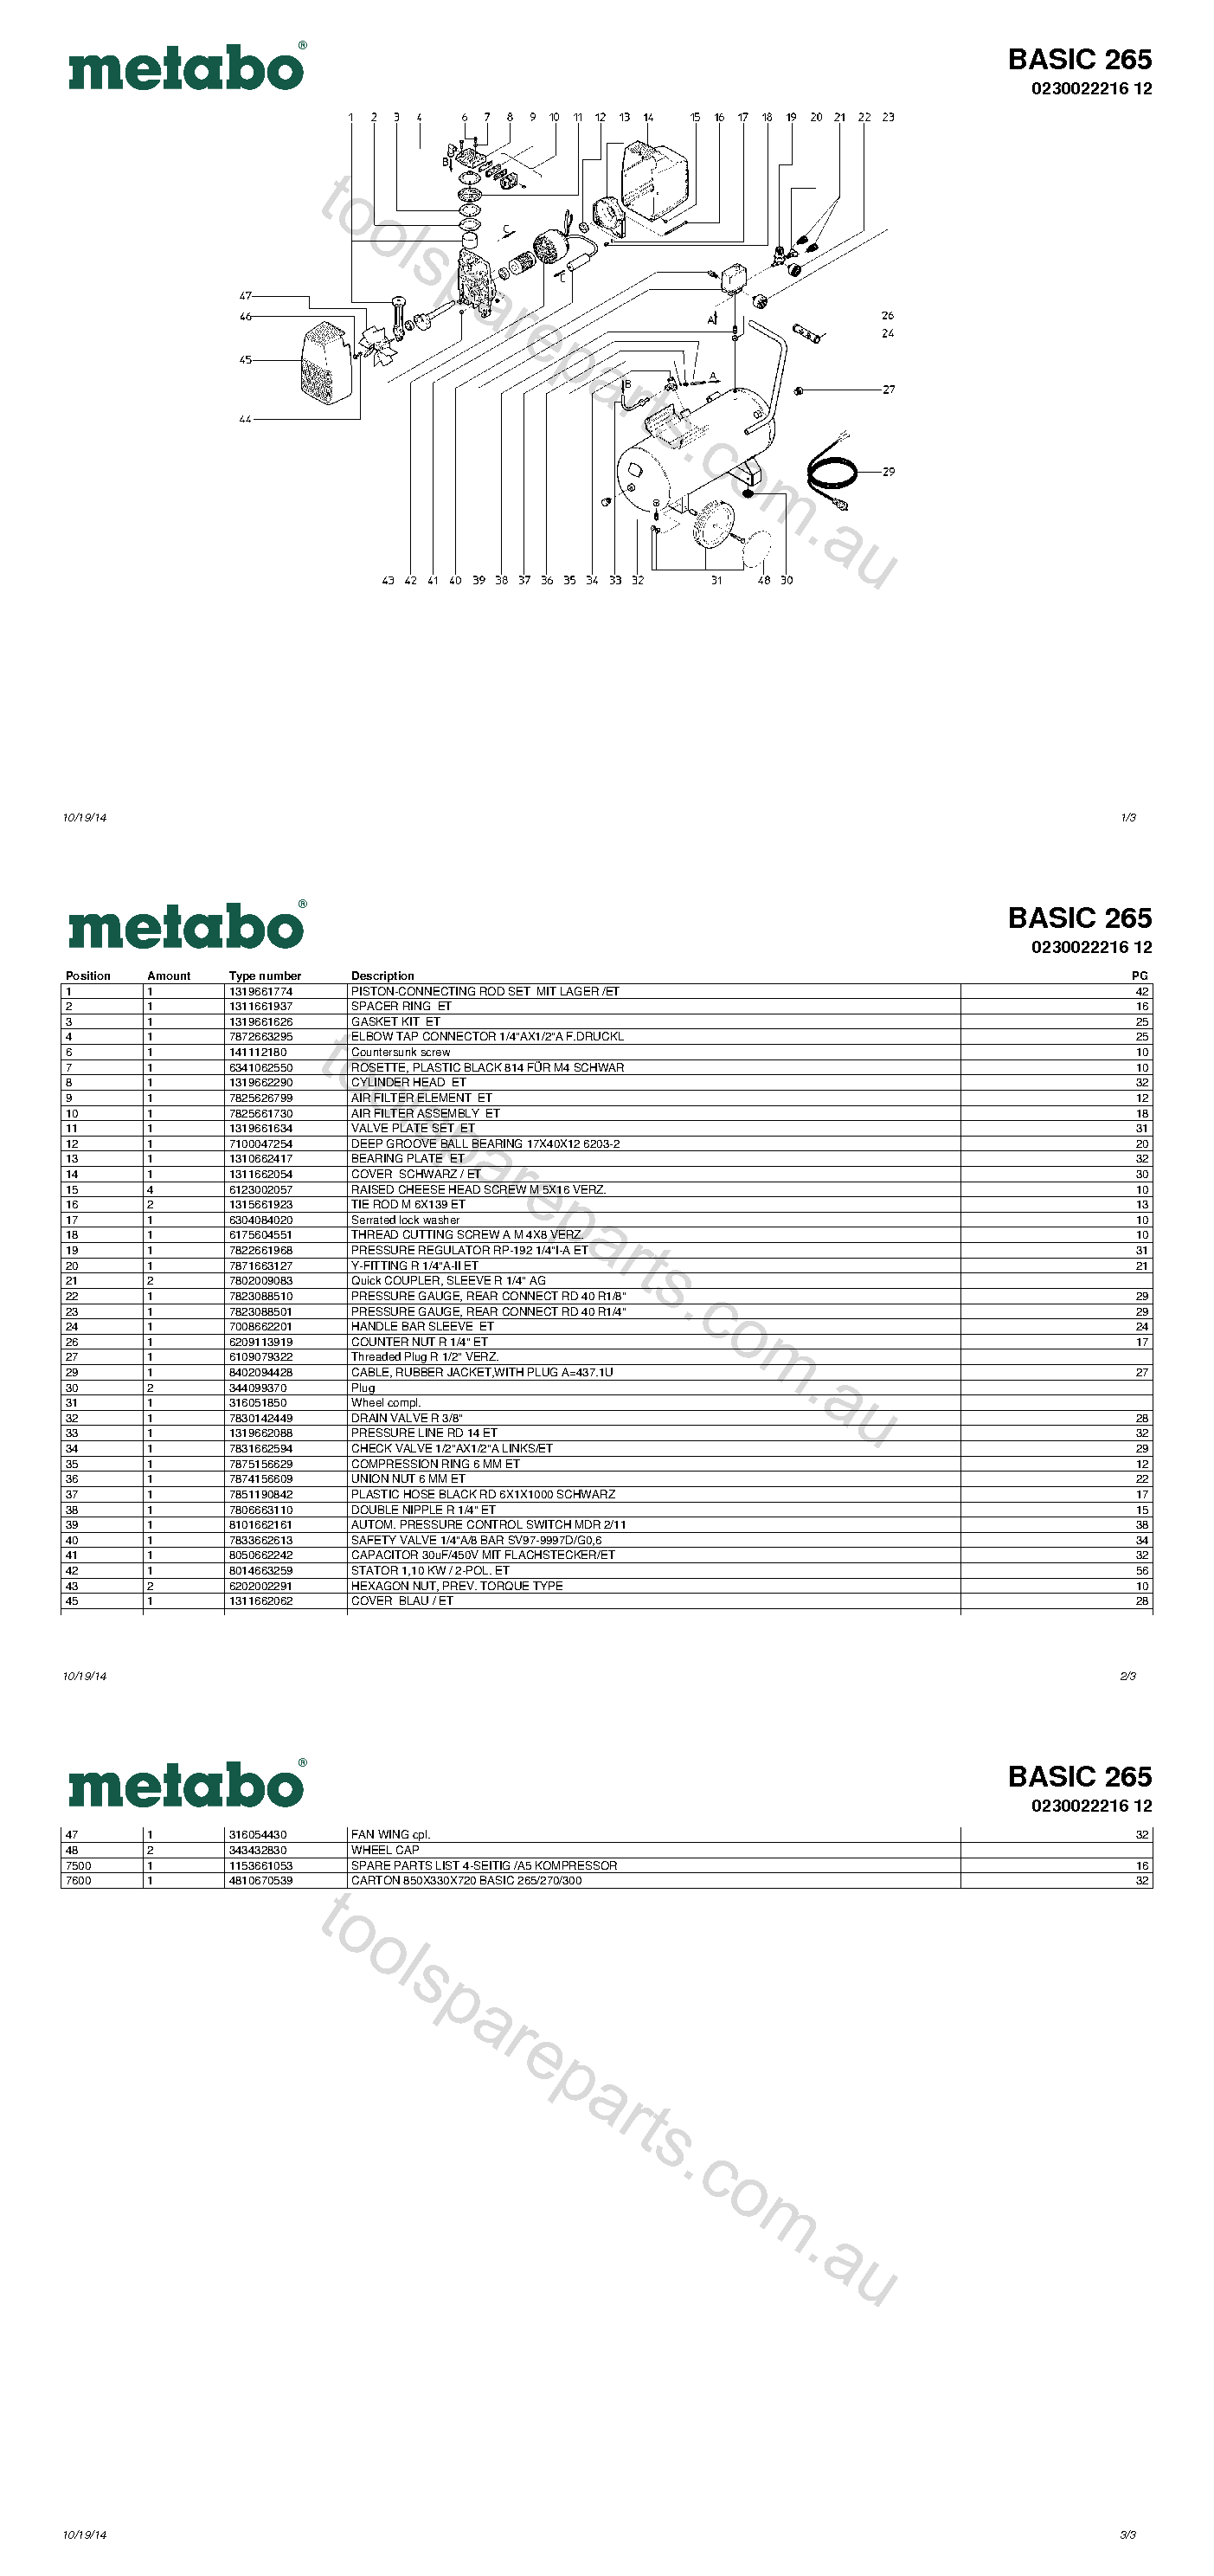 Metabo BASIC 265 0230022216 12  Diagram 1